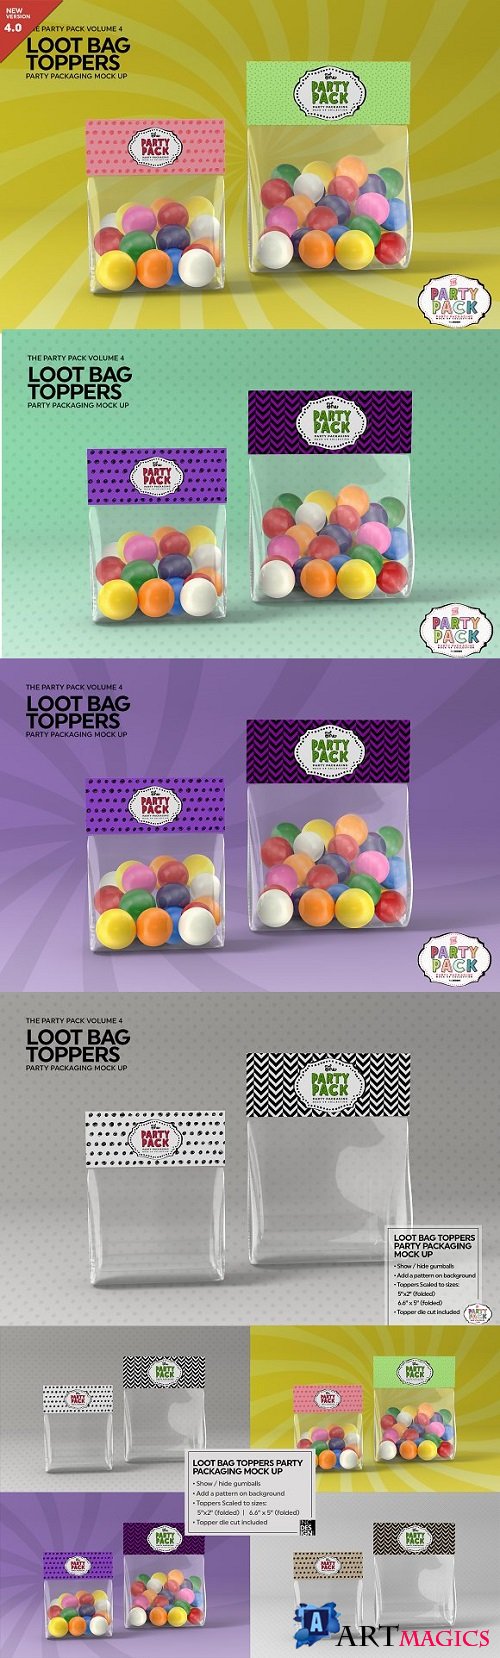 Loot Bag Packaging Mock Up - 2198508